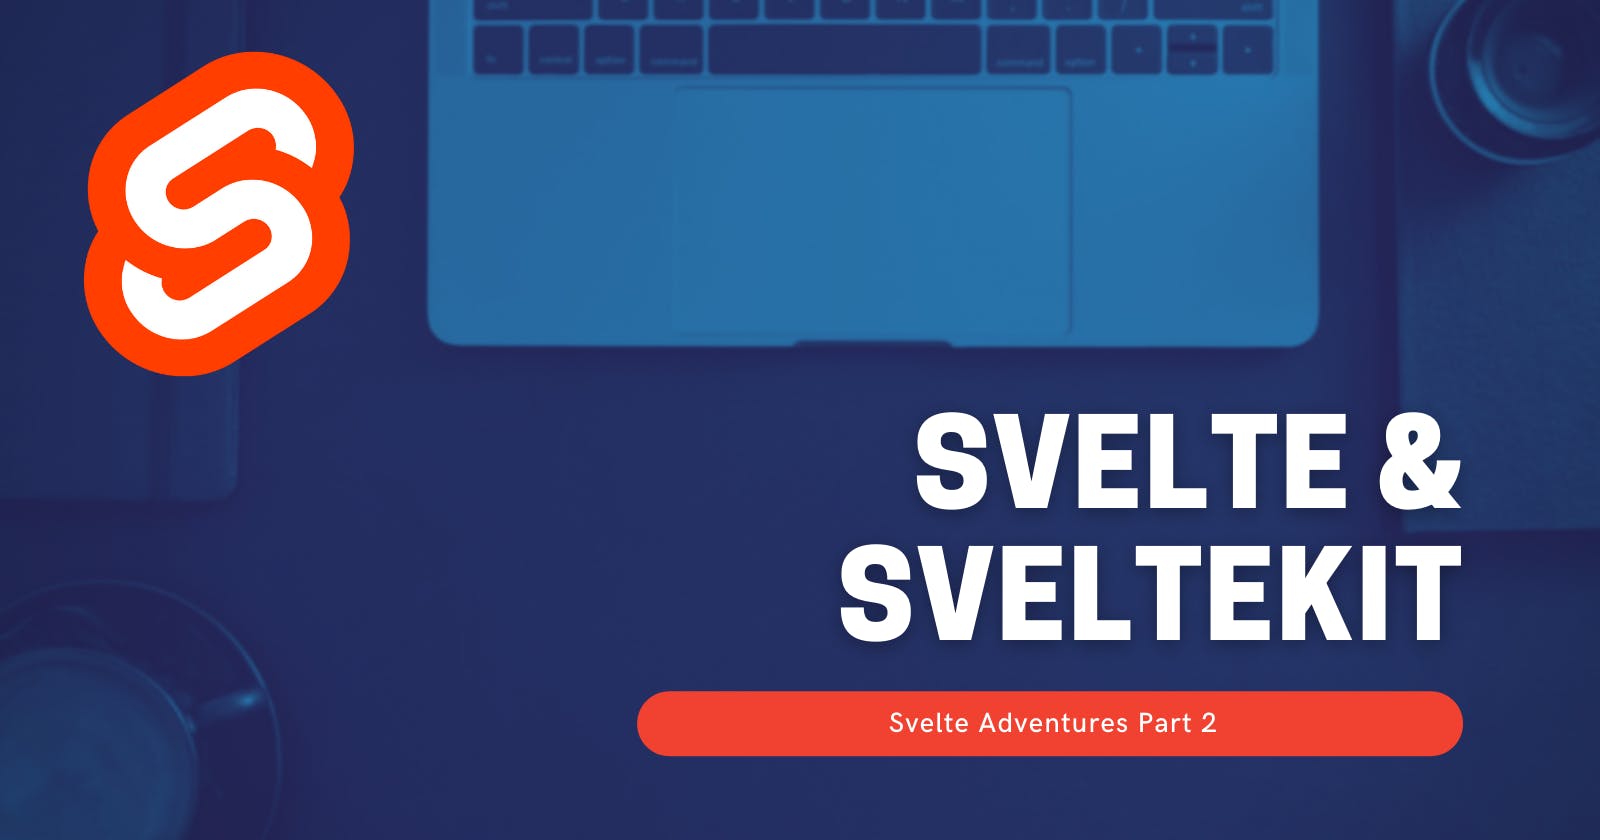 Svelte and Svelte kit